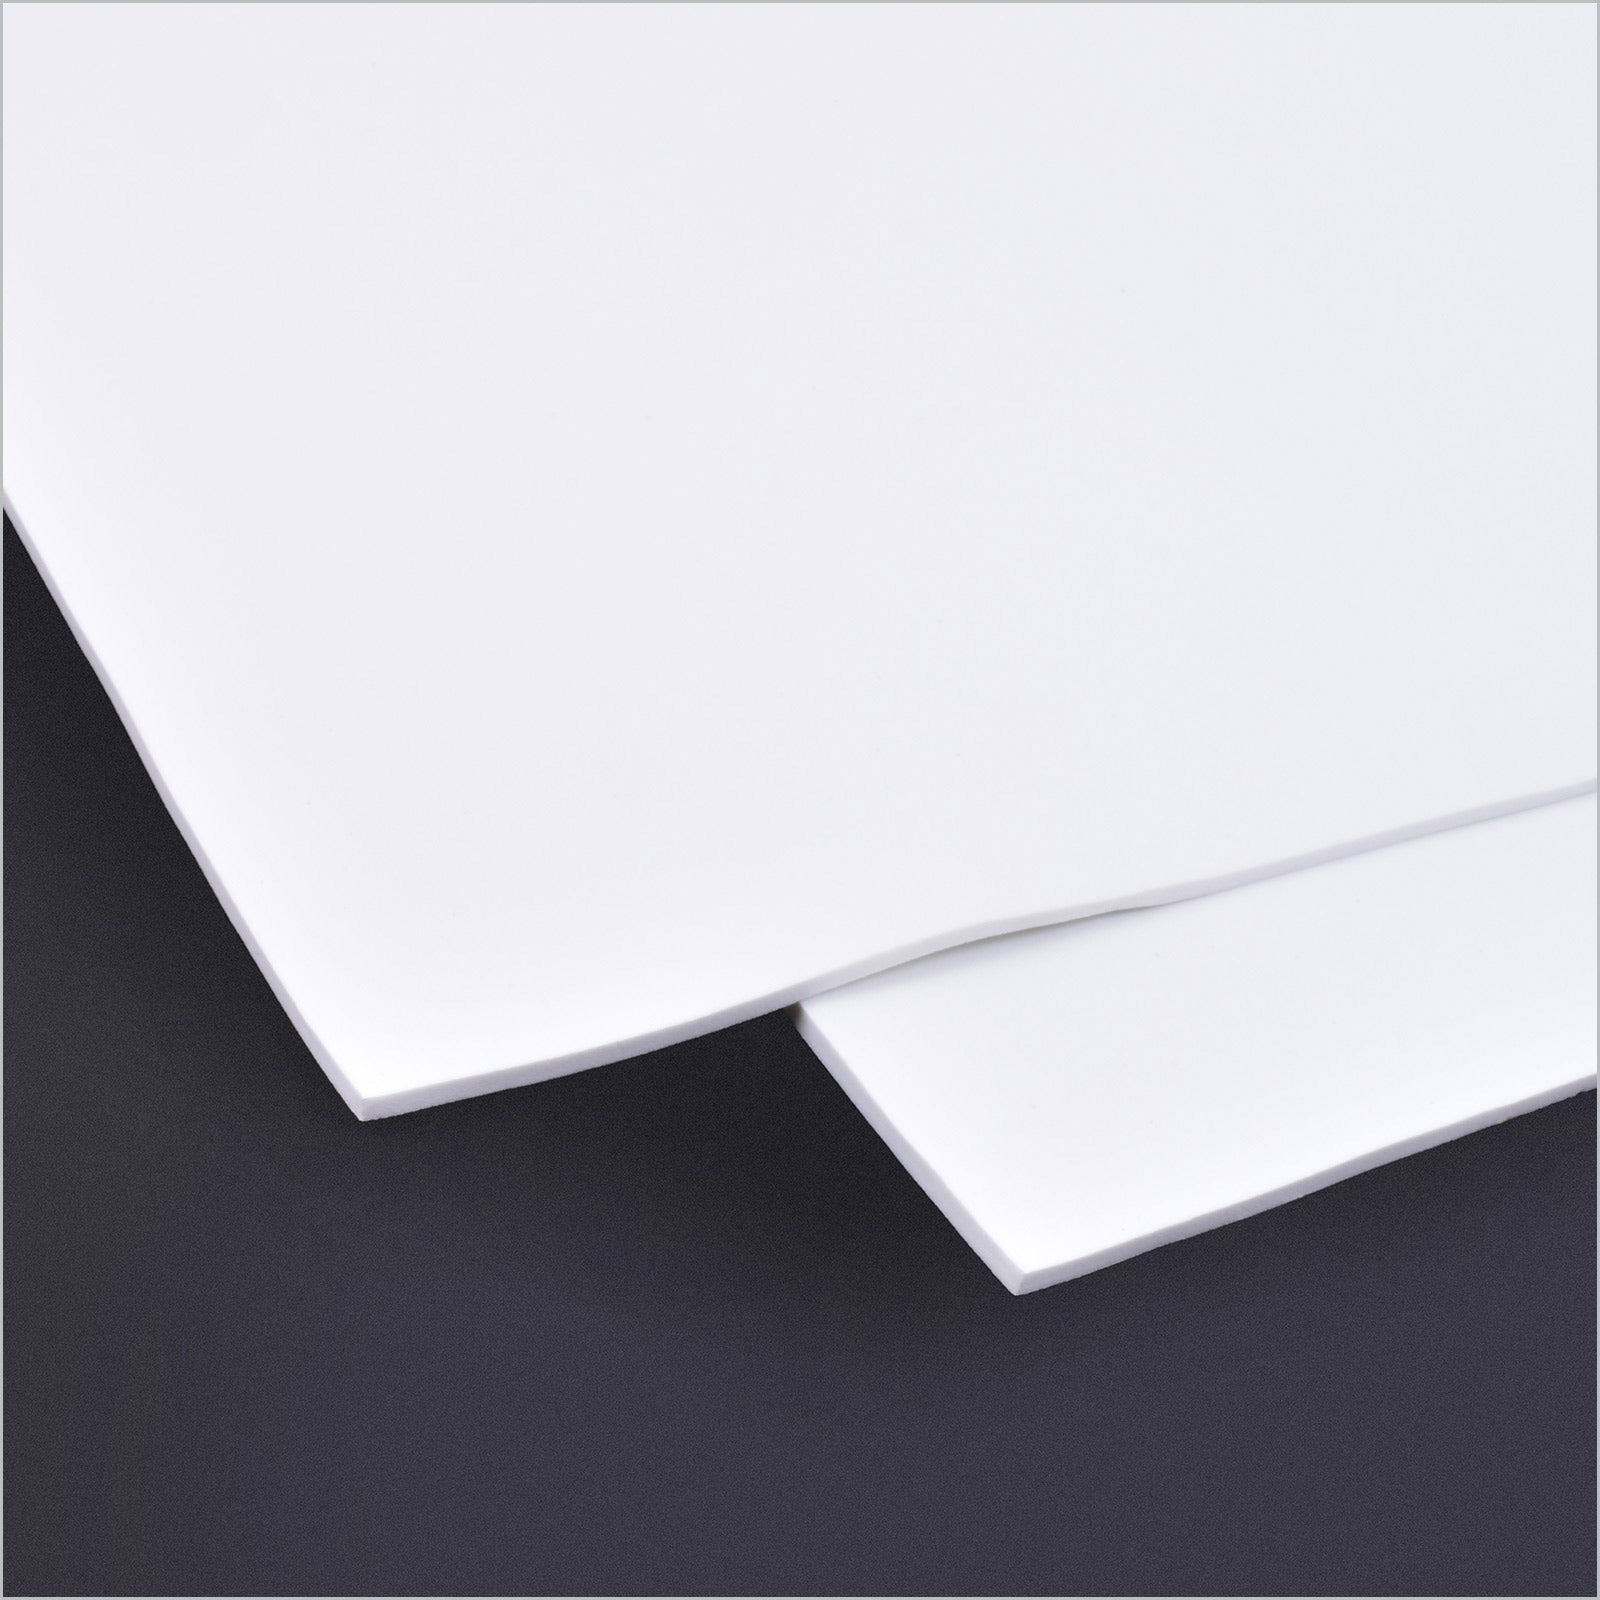 Micro - Mark CosFoam, EVA Foam, White, 4mm Thick, 2 Sheets